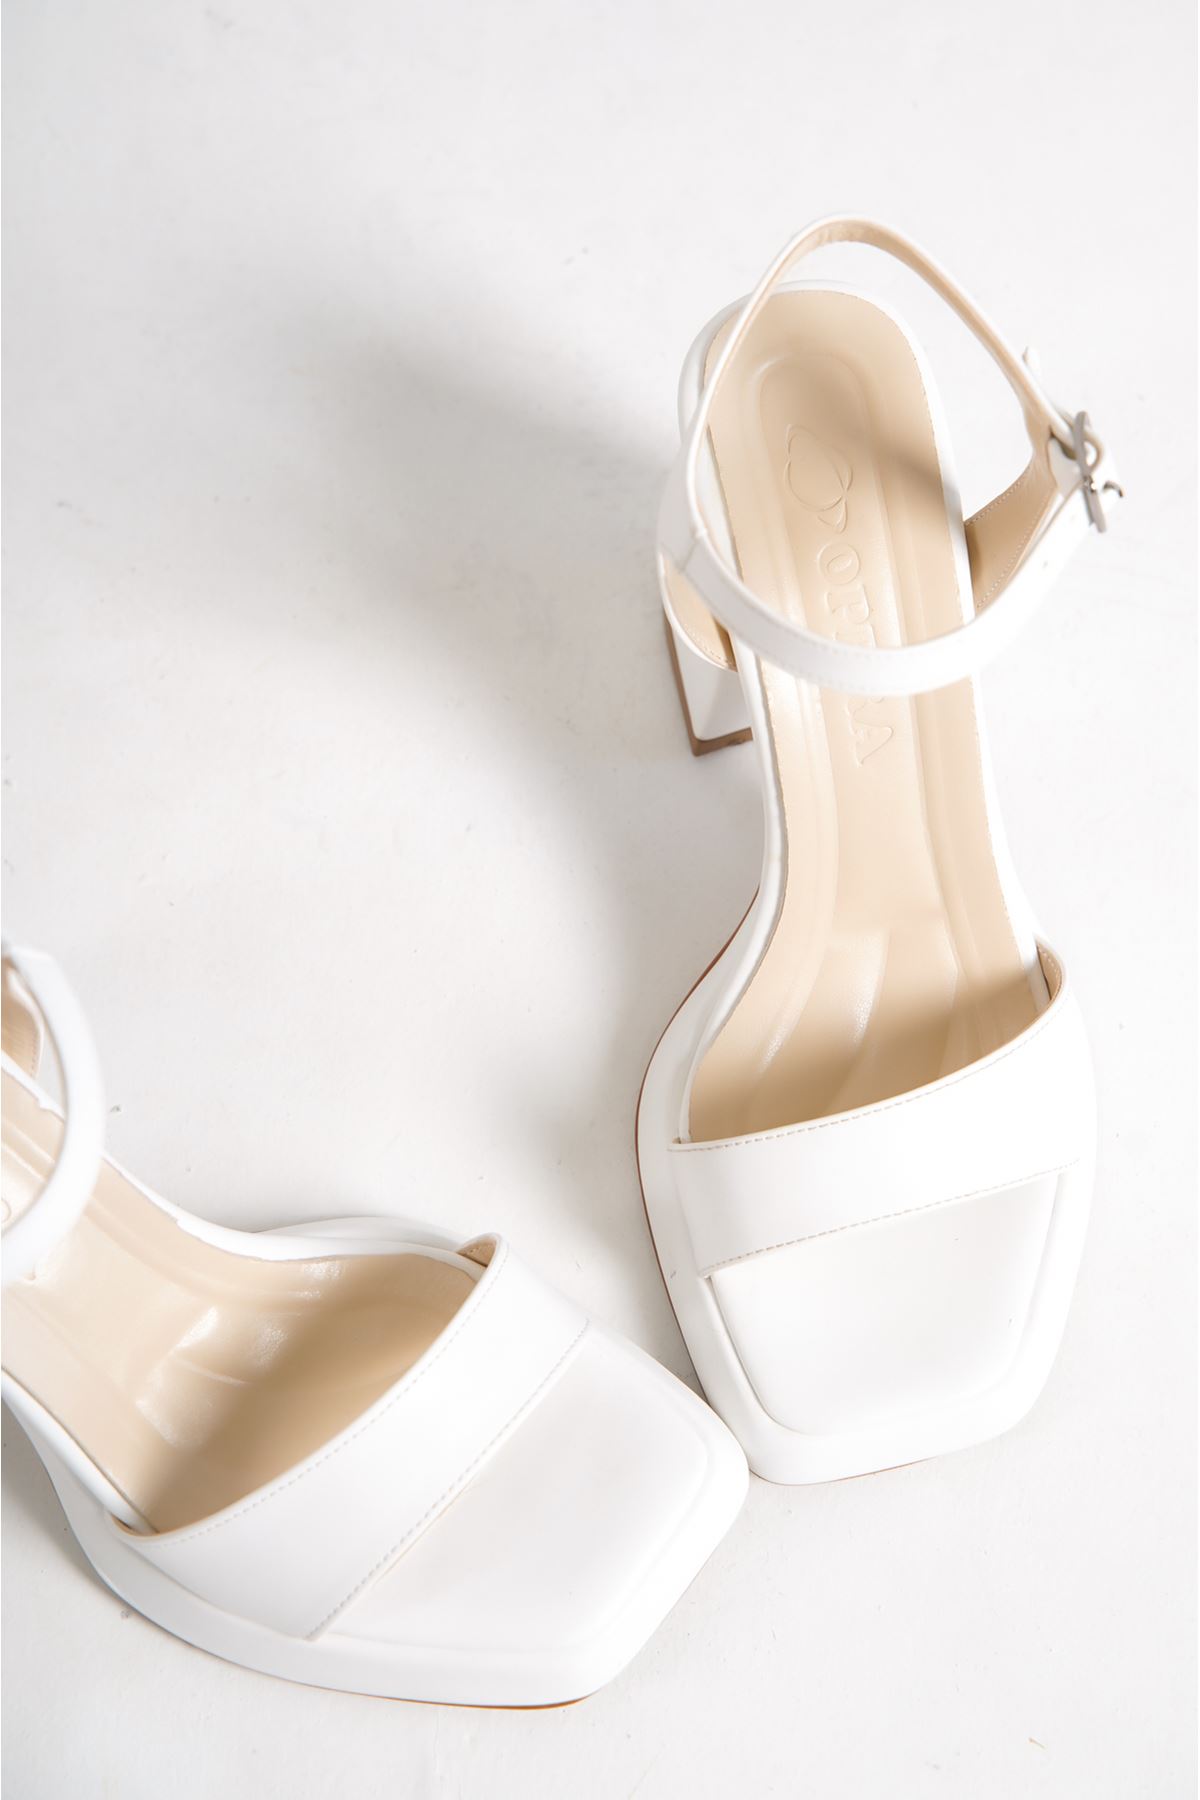 Harper Beyaz Mat Deri Dolgu Topuklu Kadın Ayakkabı